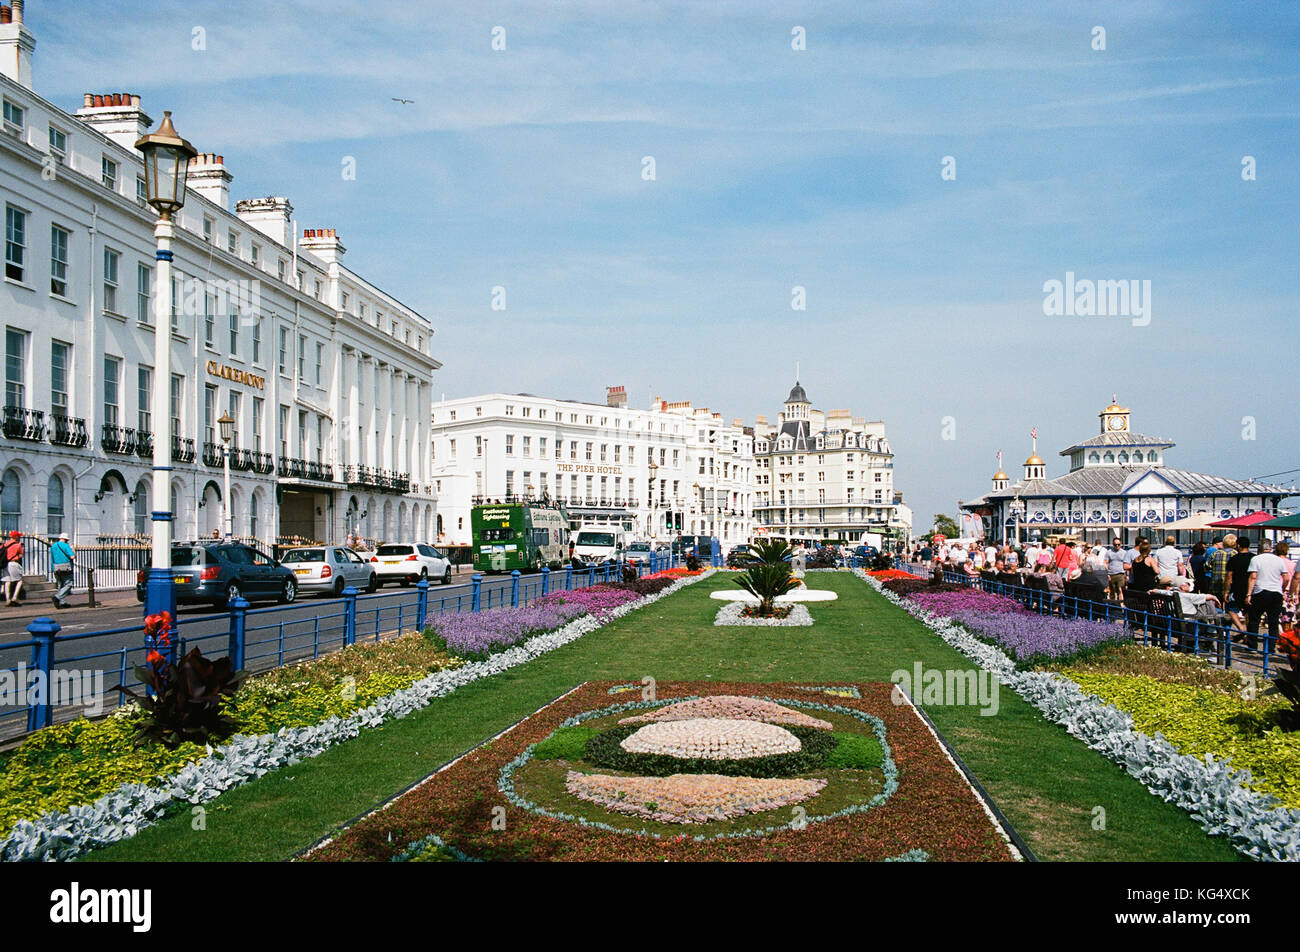 Le tapis jardins et grand parade sur front de mer d'Eastbourne, East Sussex, UK Banque D'Images